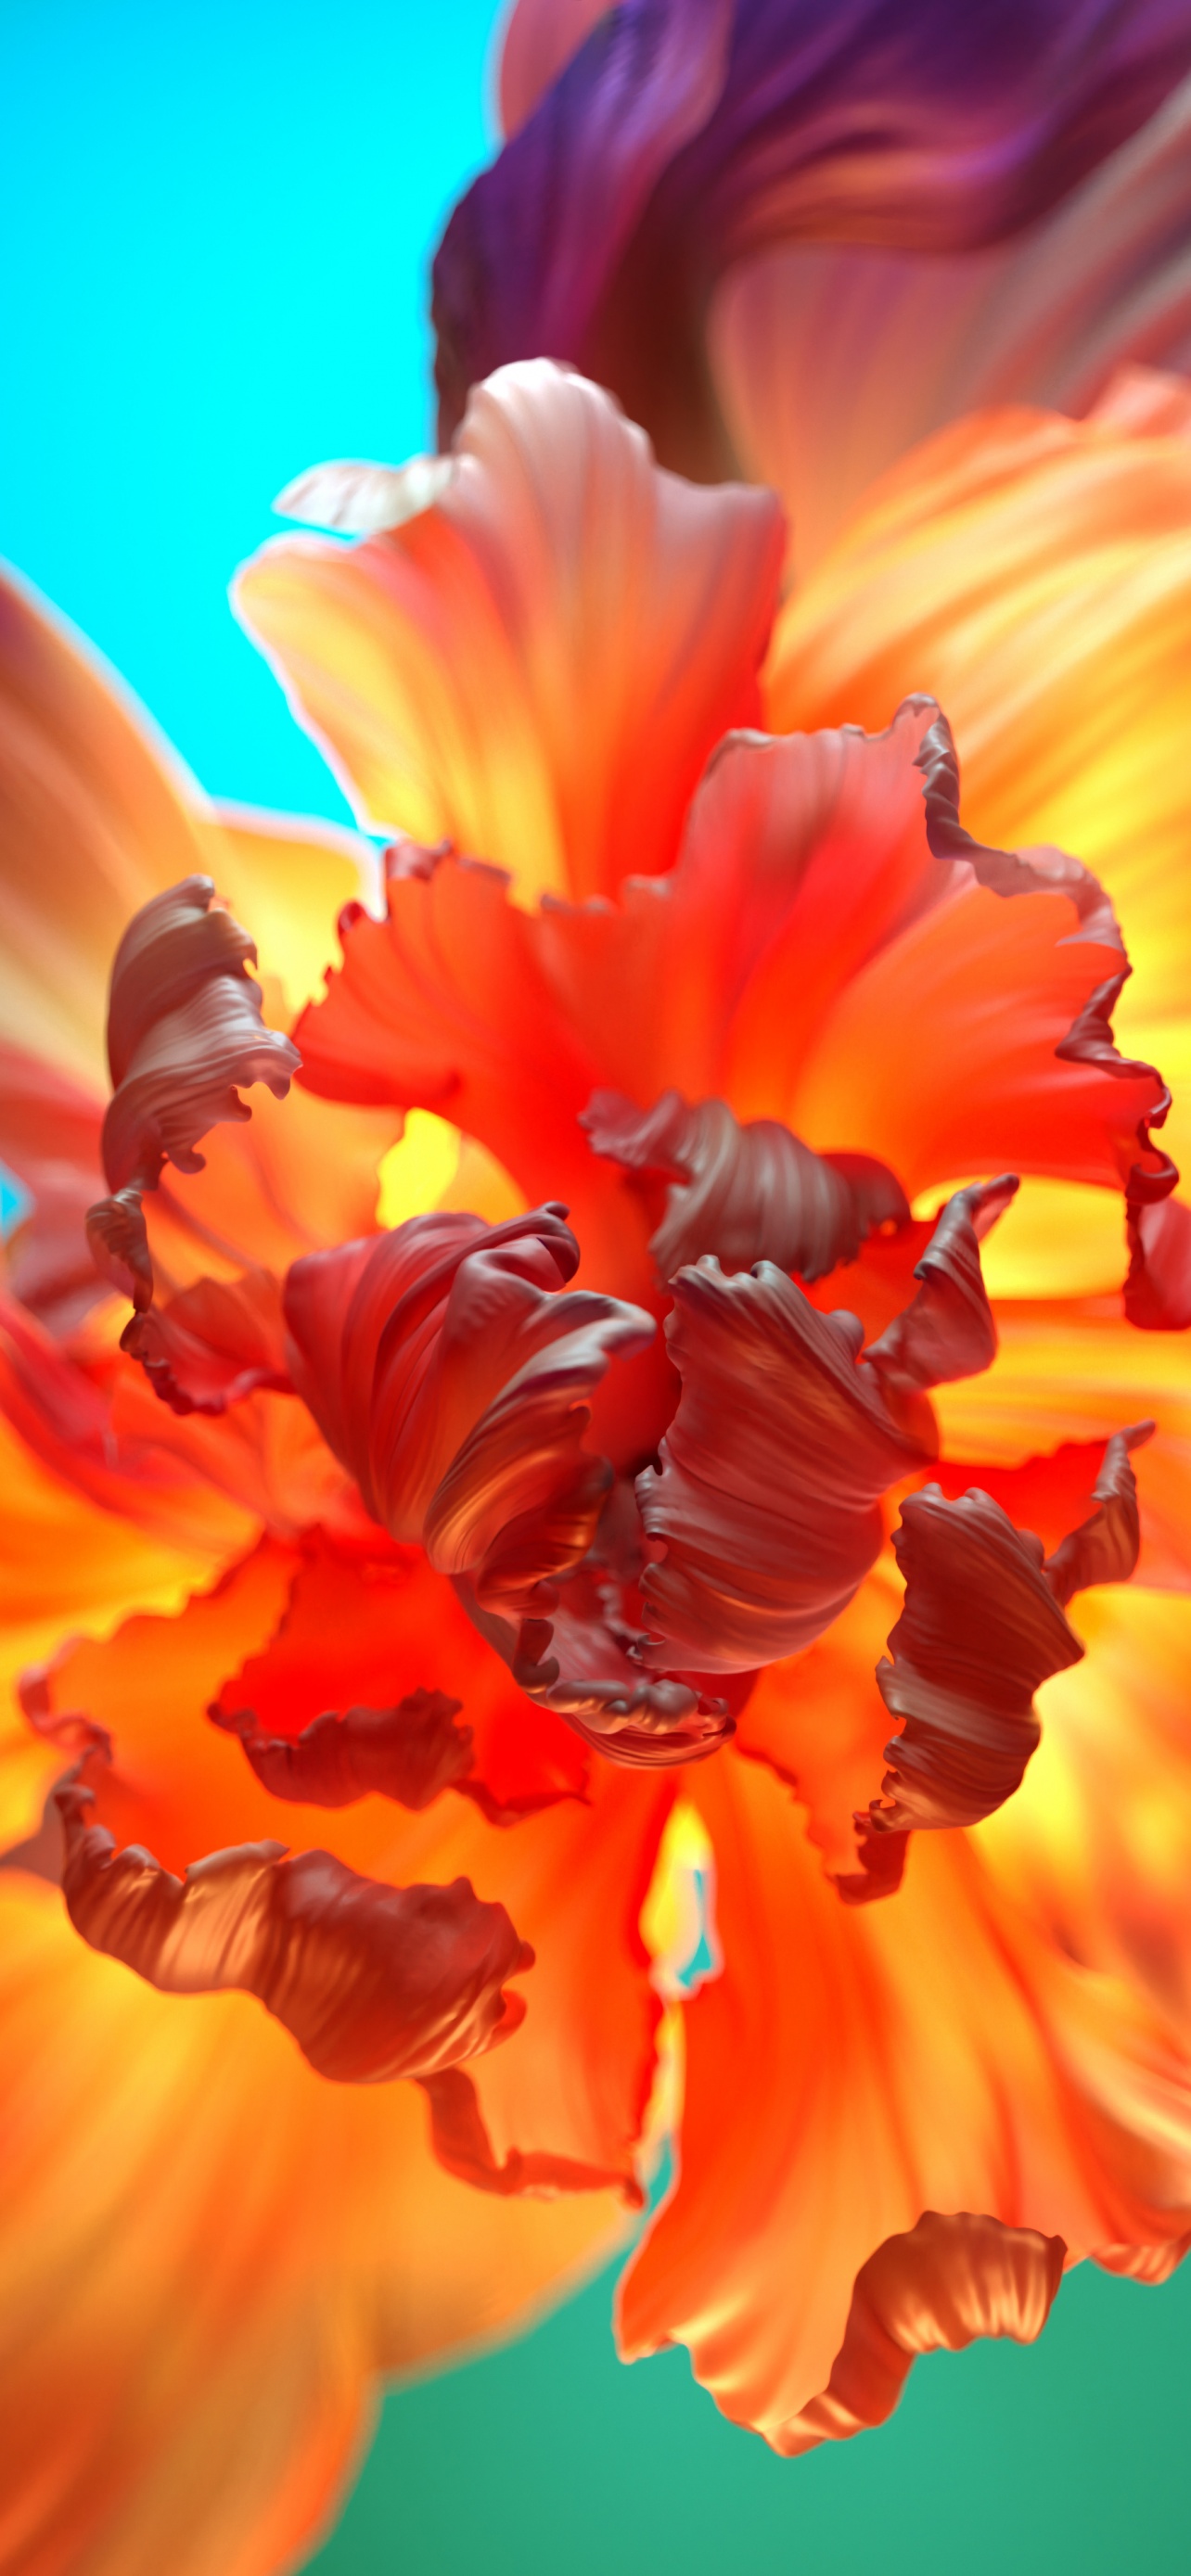 Hoa cam hay còn gọi hoa cúc đại ra rất nhiều màu sắc khác nhau nhưng màu cam vẫn là màu sắc được yêu thích nhất. Thưởng thức vẻ đẹp của những bông hoa cam cực kỳ tươi trẻ và trong sáng với bộ sưu tập hình nền hoa cam cực đẹp.